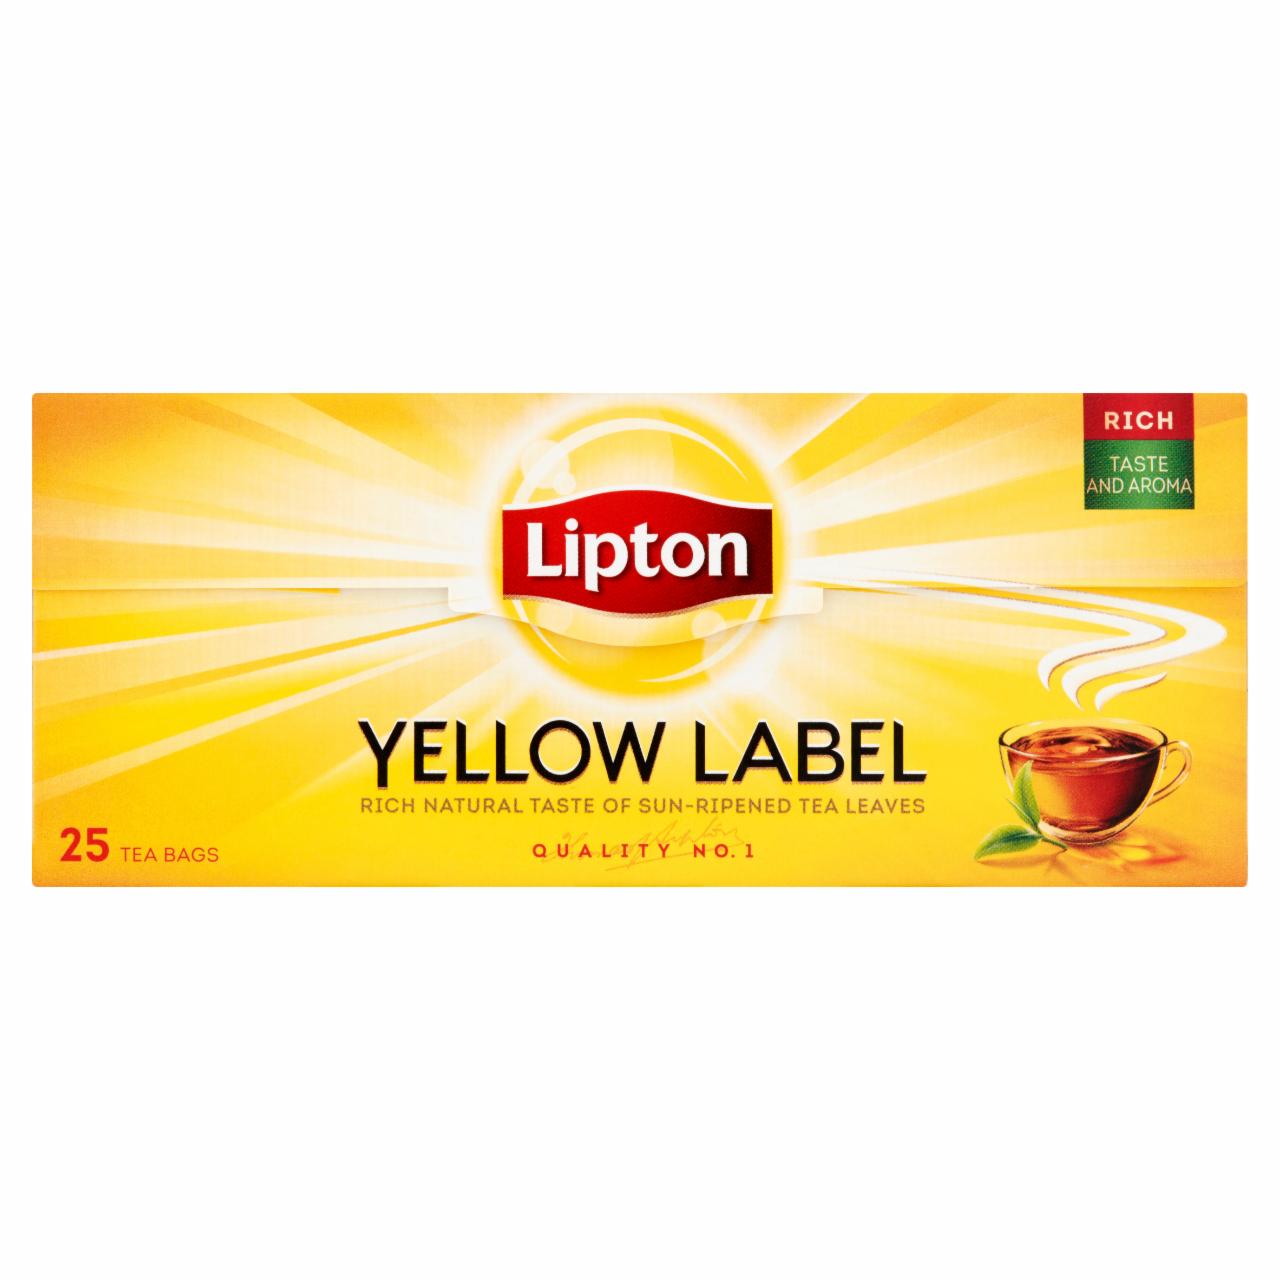 Zdjęcia - Lipton Yellow Label Herbata czarna 50 g (25 torebek)